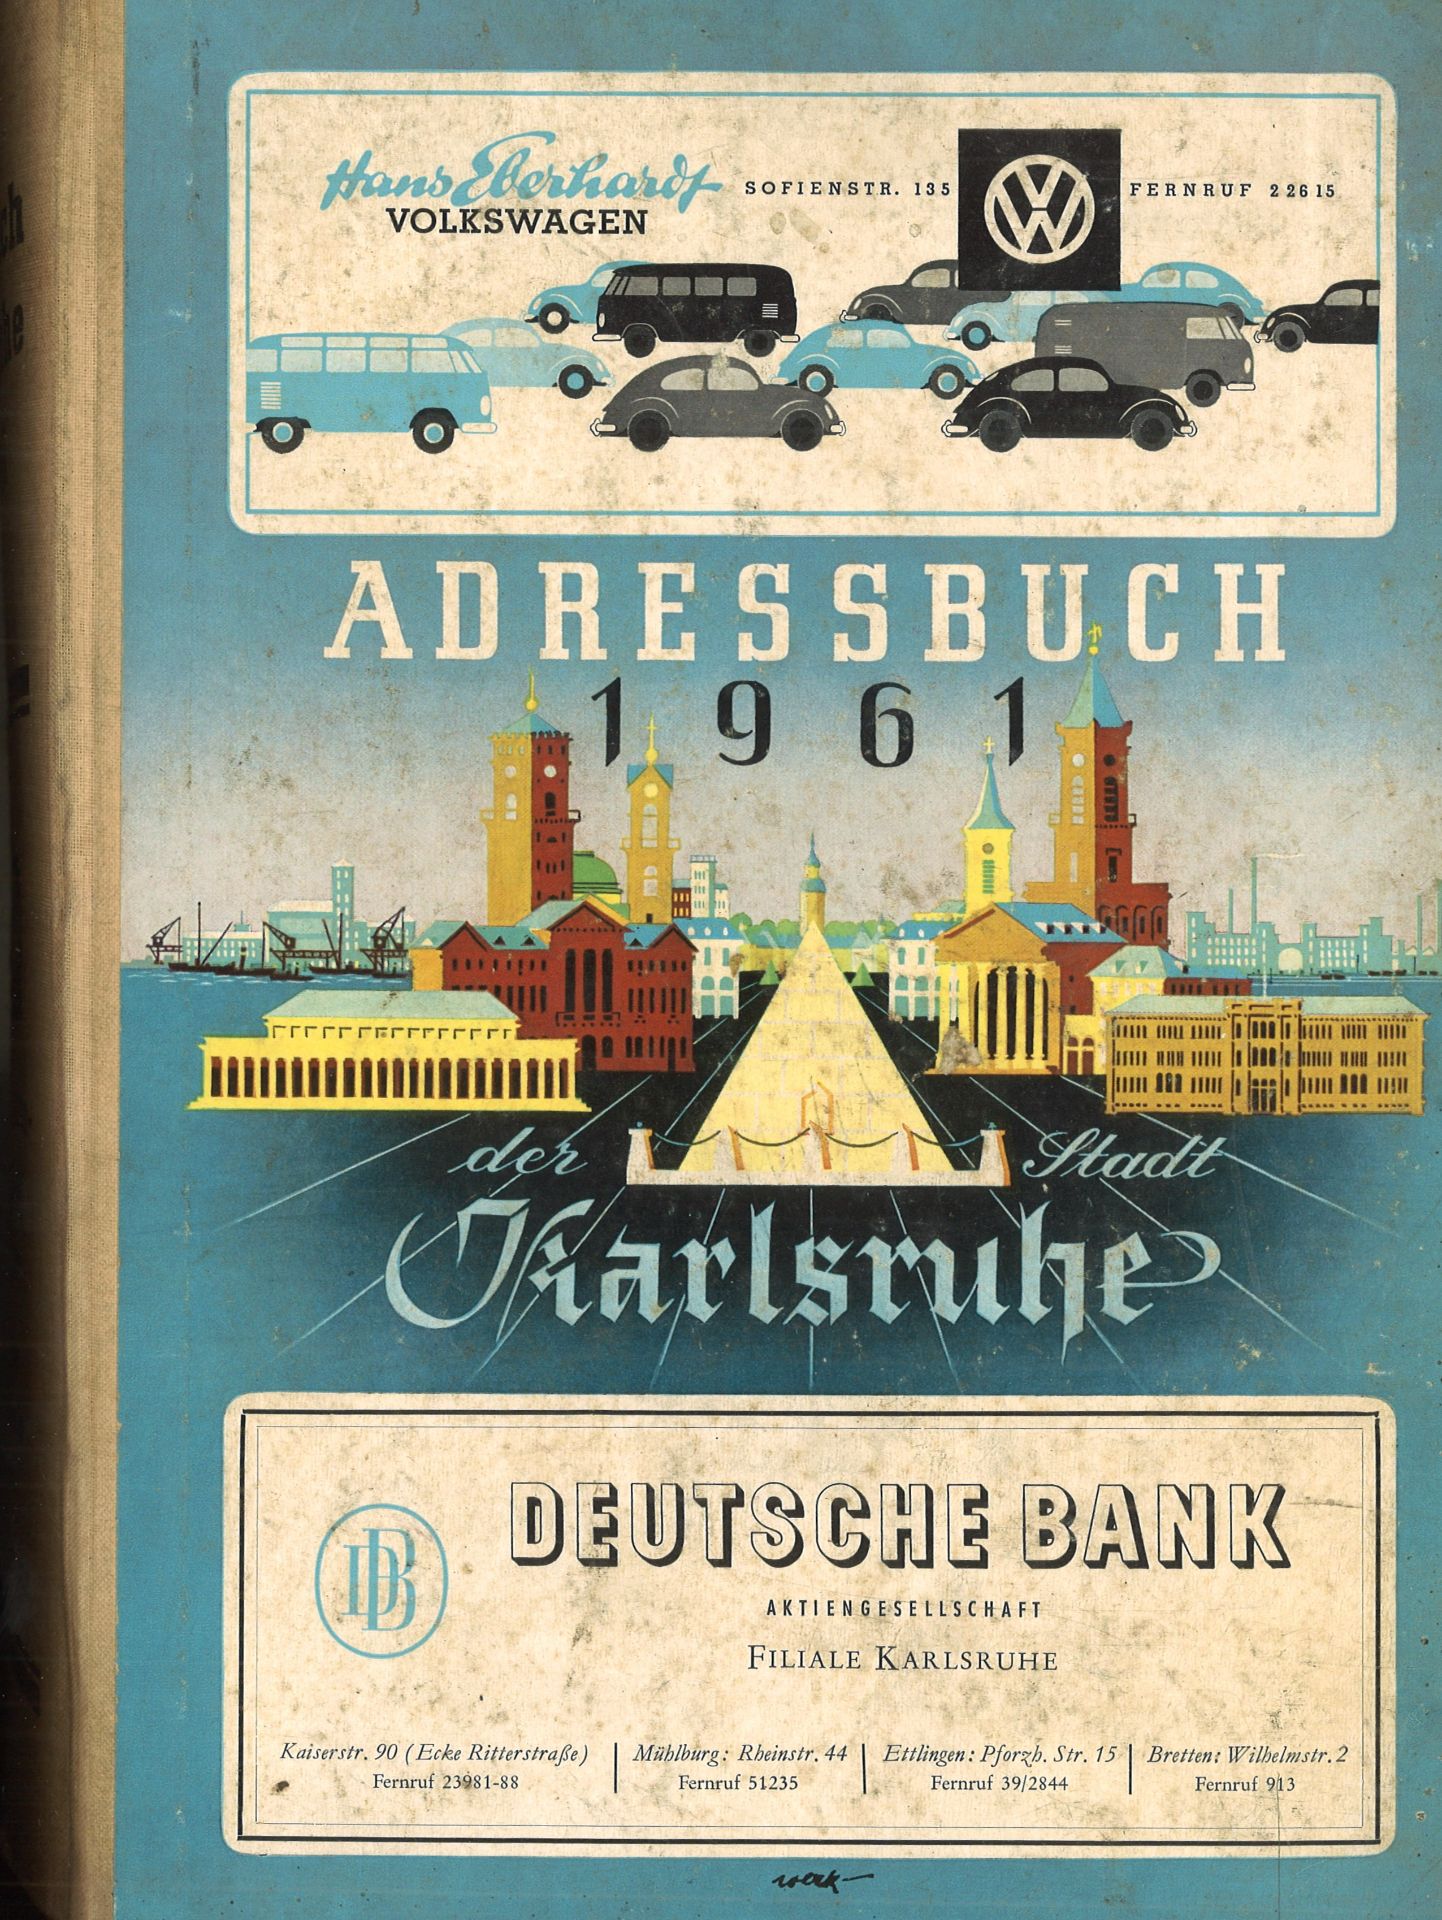 Adressbuch der Stadt Karlsruhe von 1961, vierundachtzigster Jahrgang, Adressbuchverlag G. Braun,